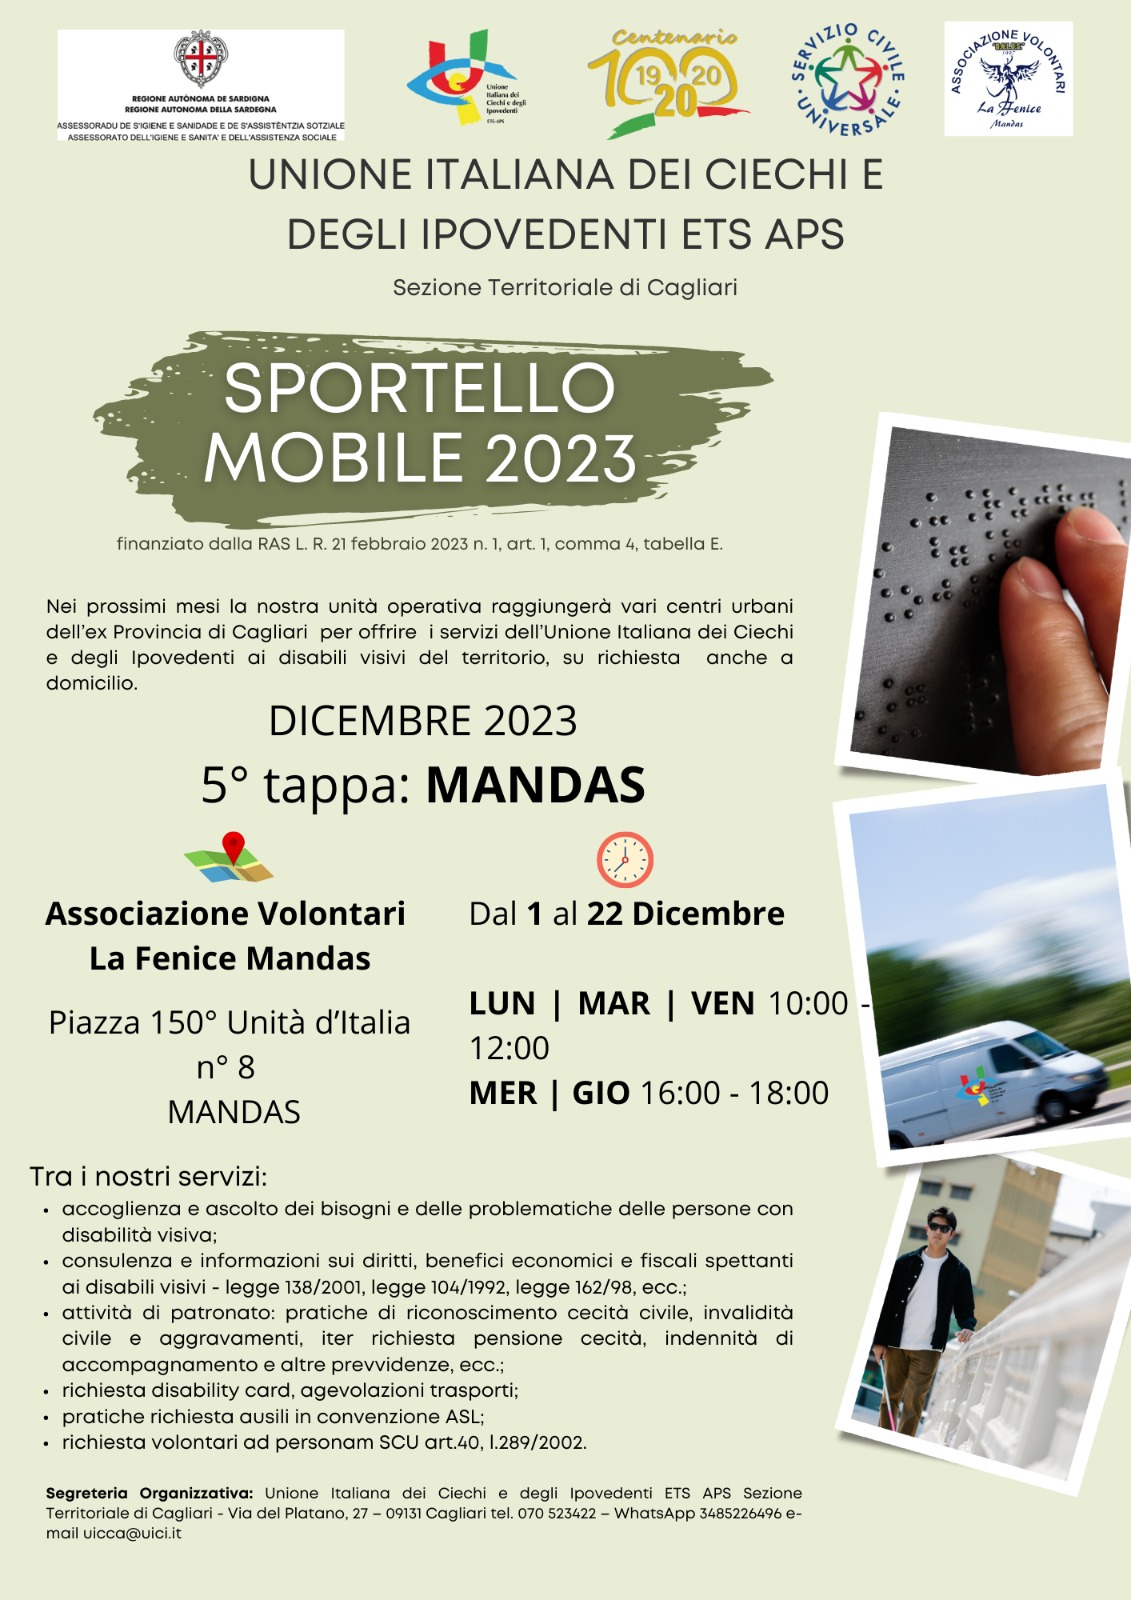 Sportello Mobile 2023 dell’Unione Ciechi e ipovedenti della sezione di Cagliari, a Mandas  fino al 22 dicembre 